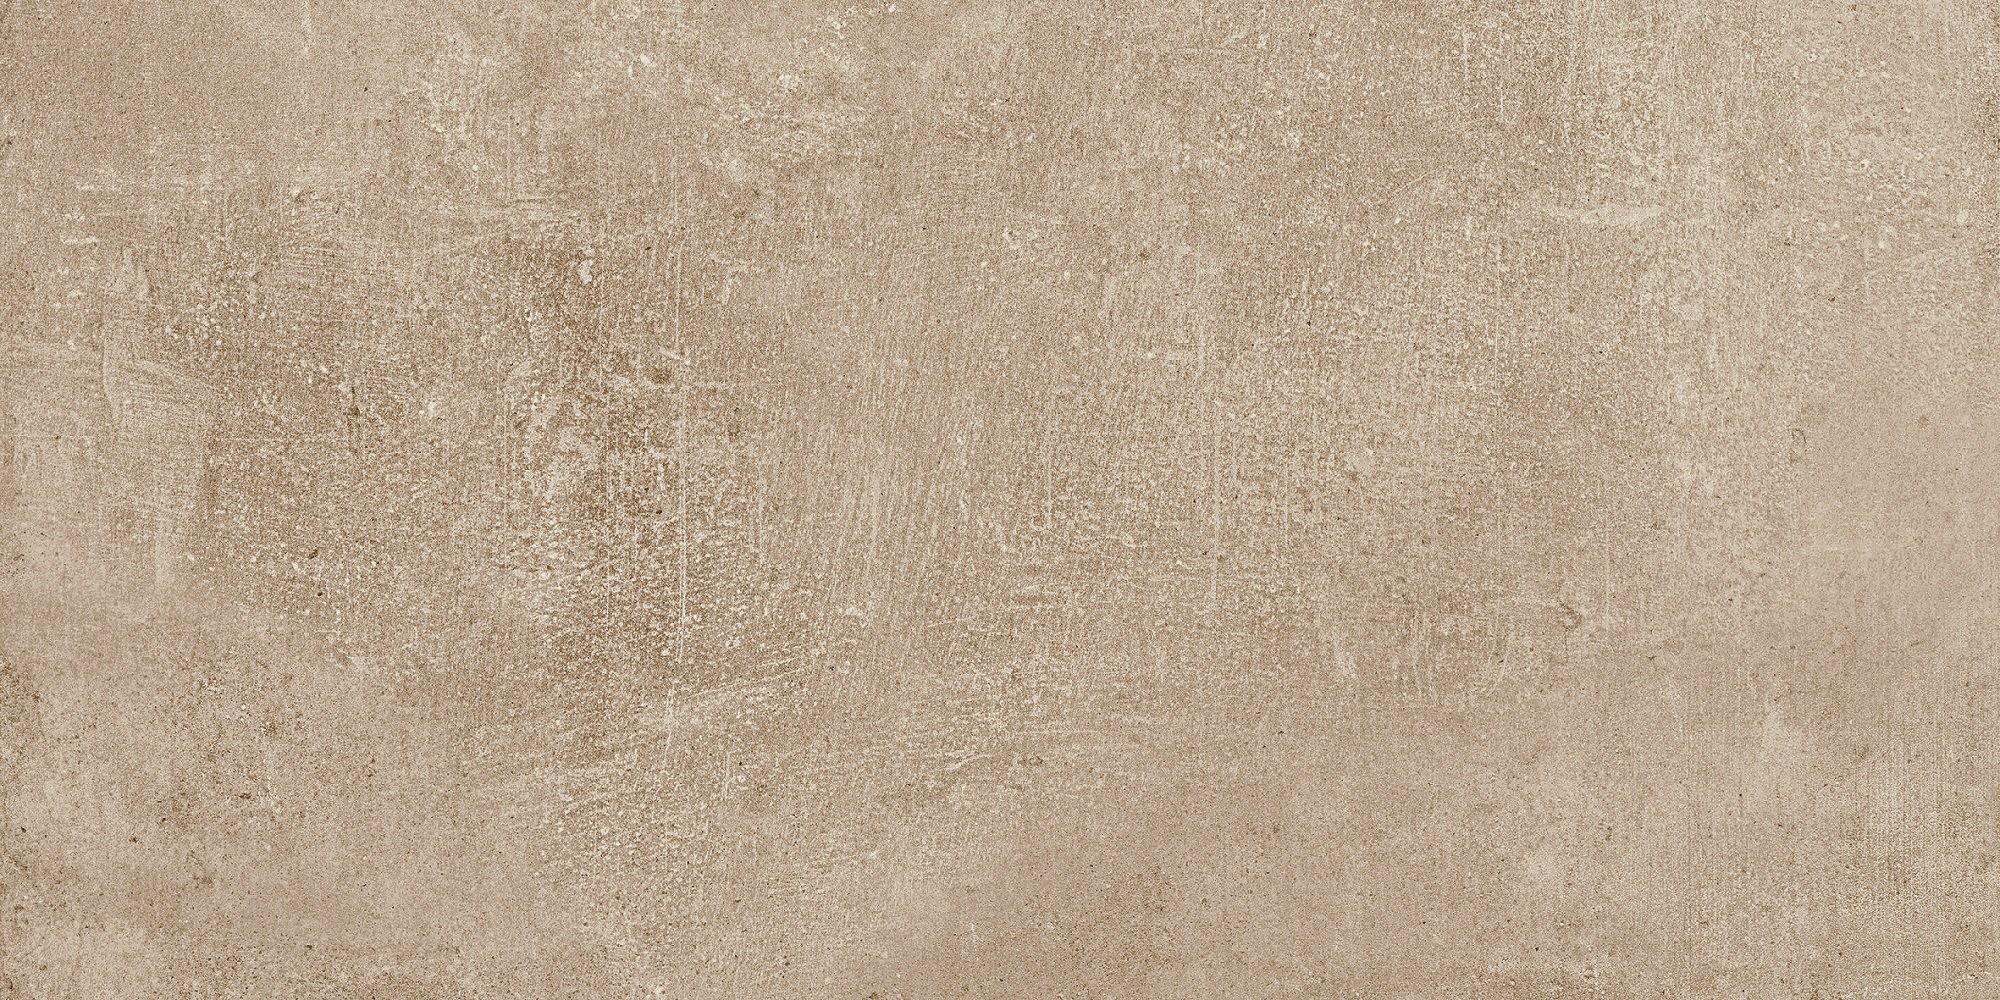 Fliese Betonoptik hell beige durchgefärbtes Feinsteinzeug kalibriert Patch Almond Ragno by Marazzi